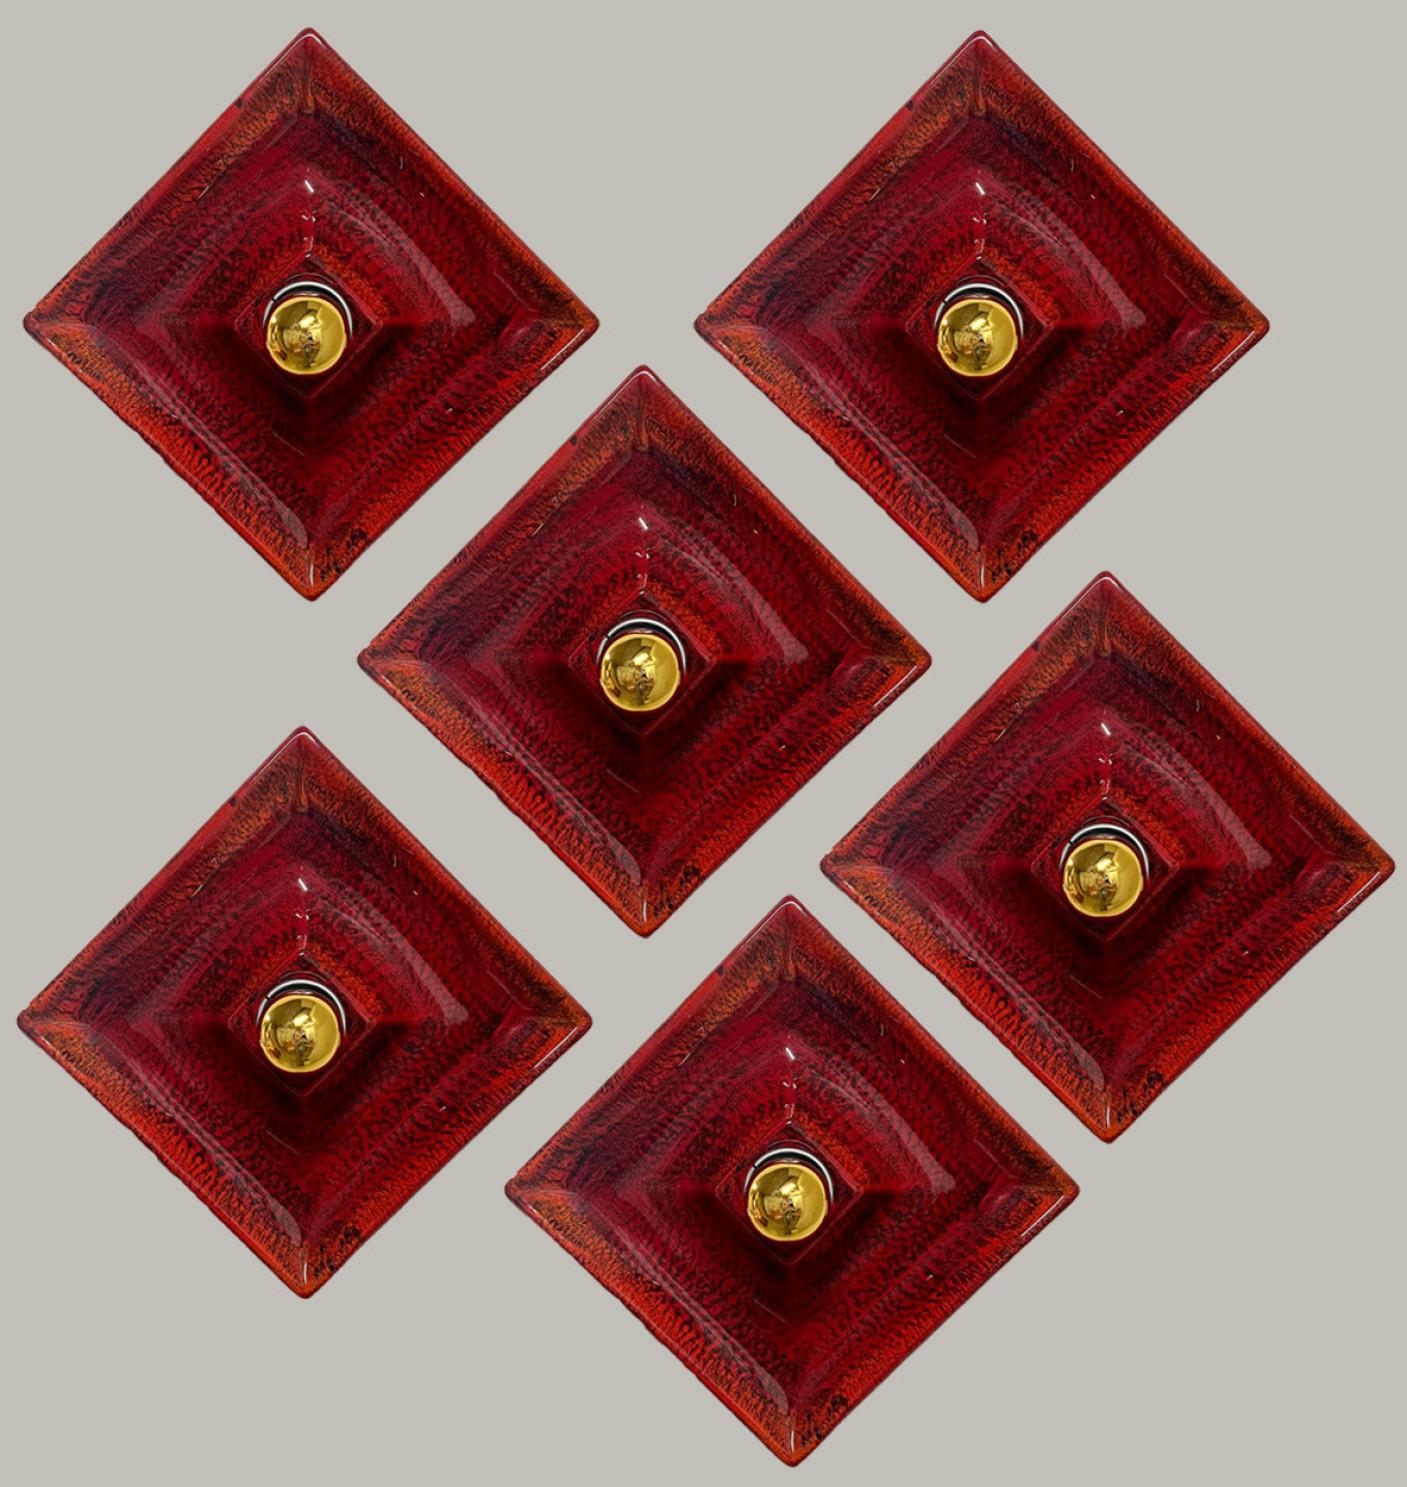 Appliques en céramique rouge. Fabriqué par Hustadt Leuchten Keramik, Allemagne, dans les années 1970.

La glaçure est rouge et de forme carrée.

Nous avons utilisé des ampoules miroir dorées (voir images), mais les ampoules miroir argentées ou or